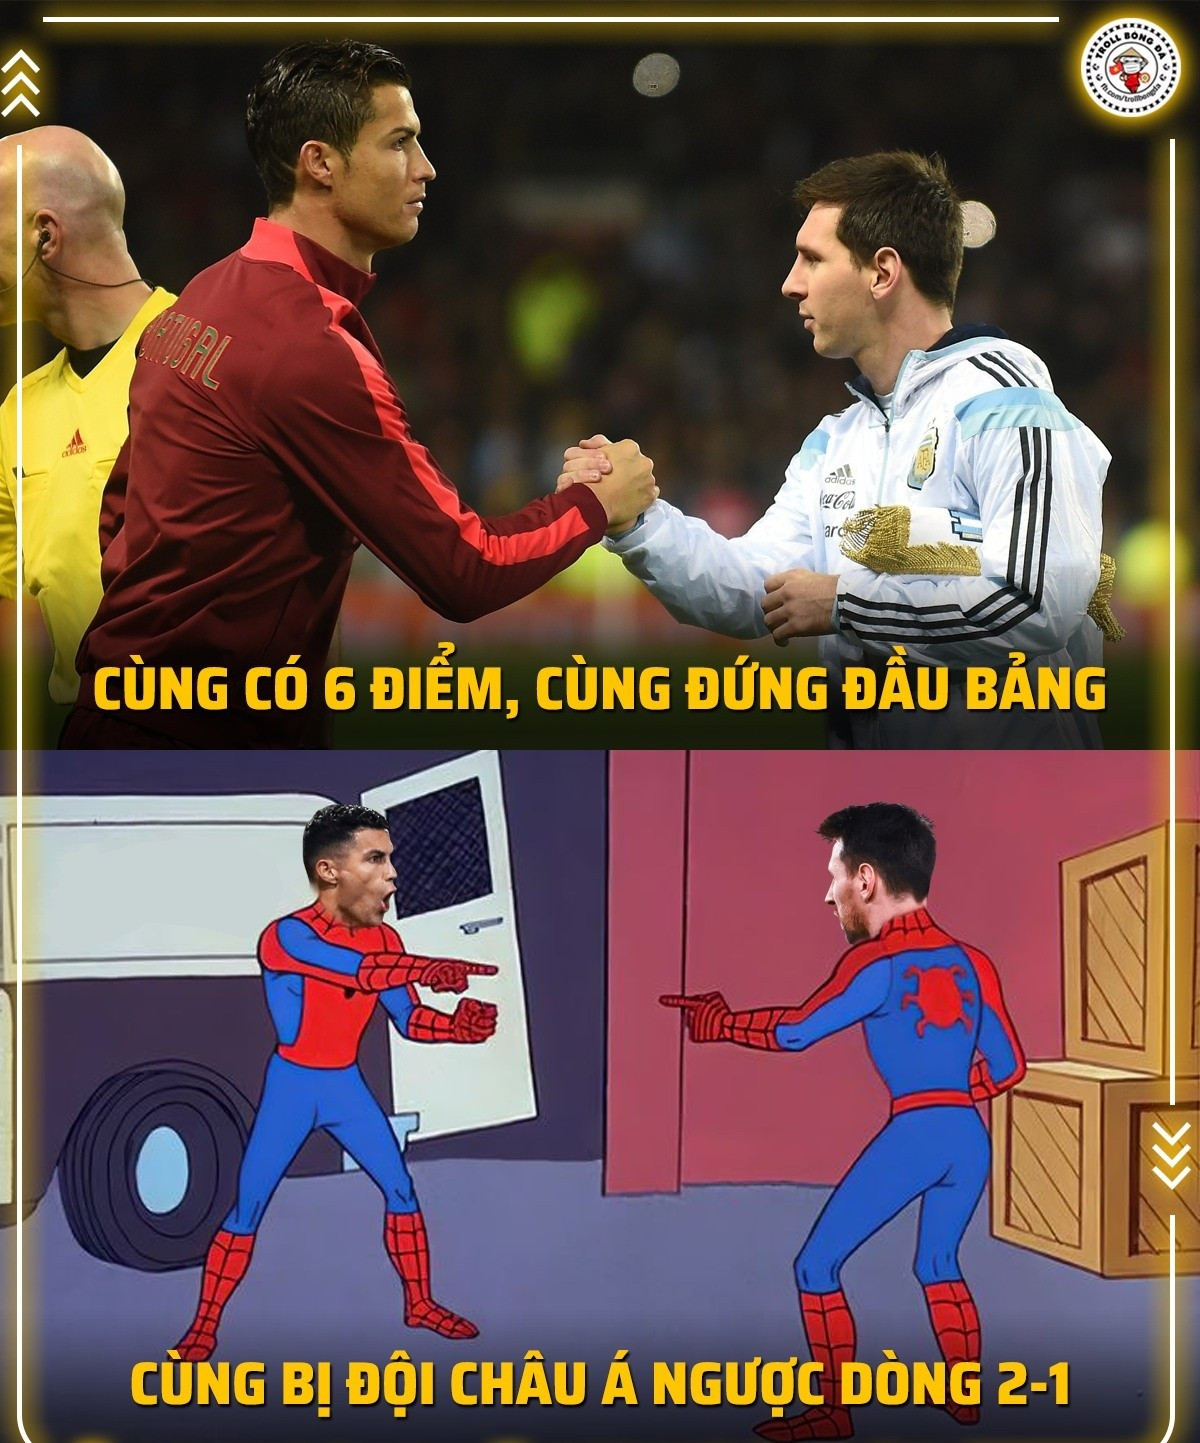 Hai huyền thoại bóng đá Messi và Ronaldo đều có chung một kịch bản tại World Cup 2022 (Ảnh: Troll bóng đá).